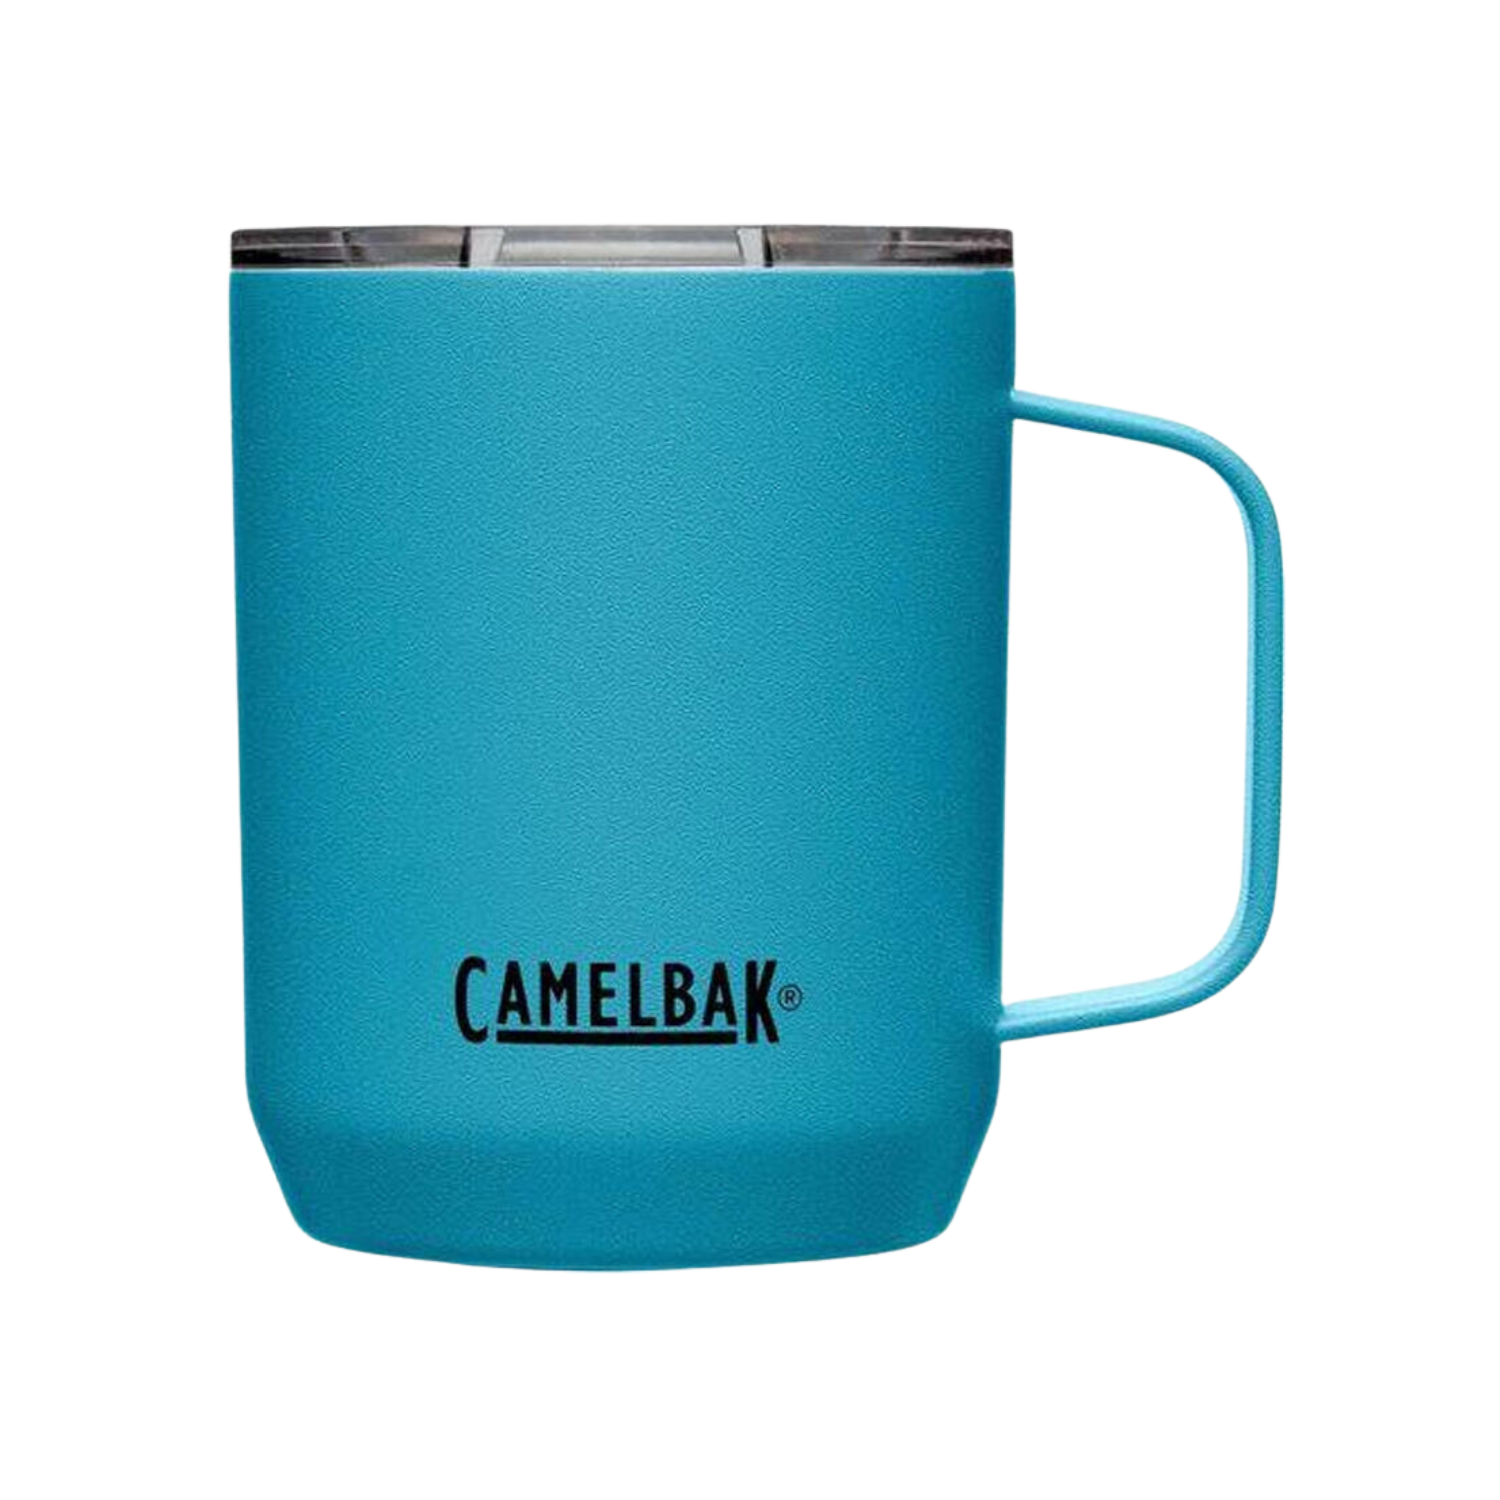 Camelbak Stainless Steel Camp Mug 12oz